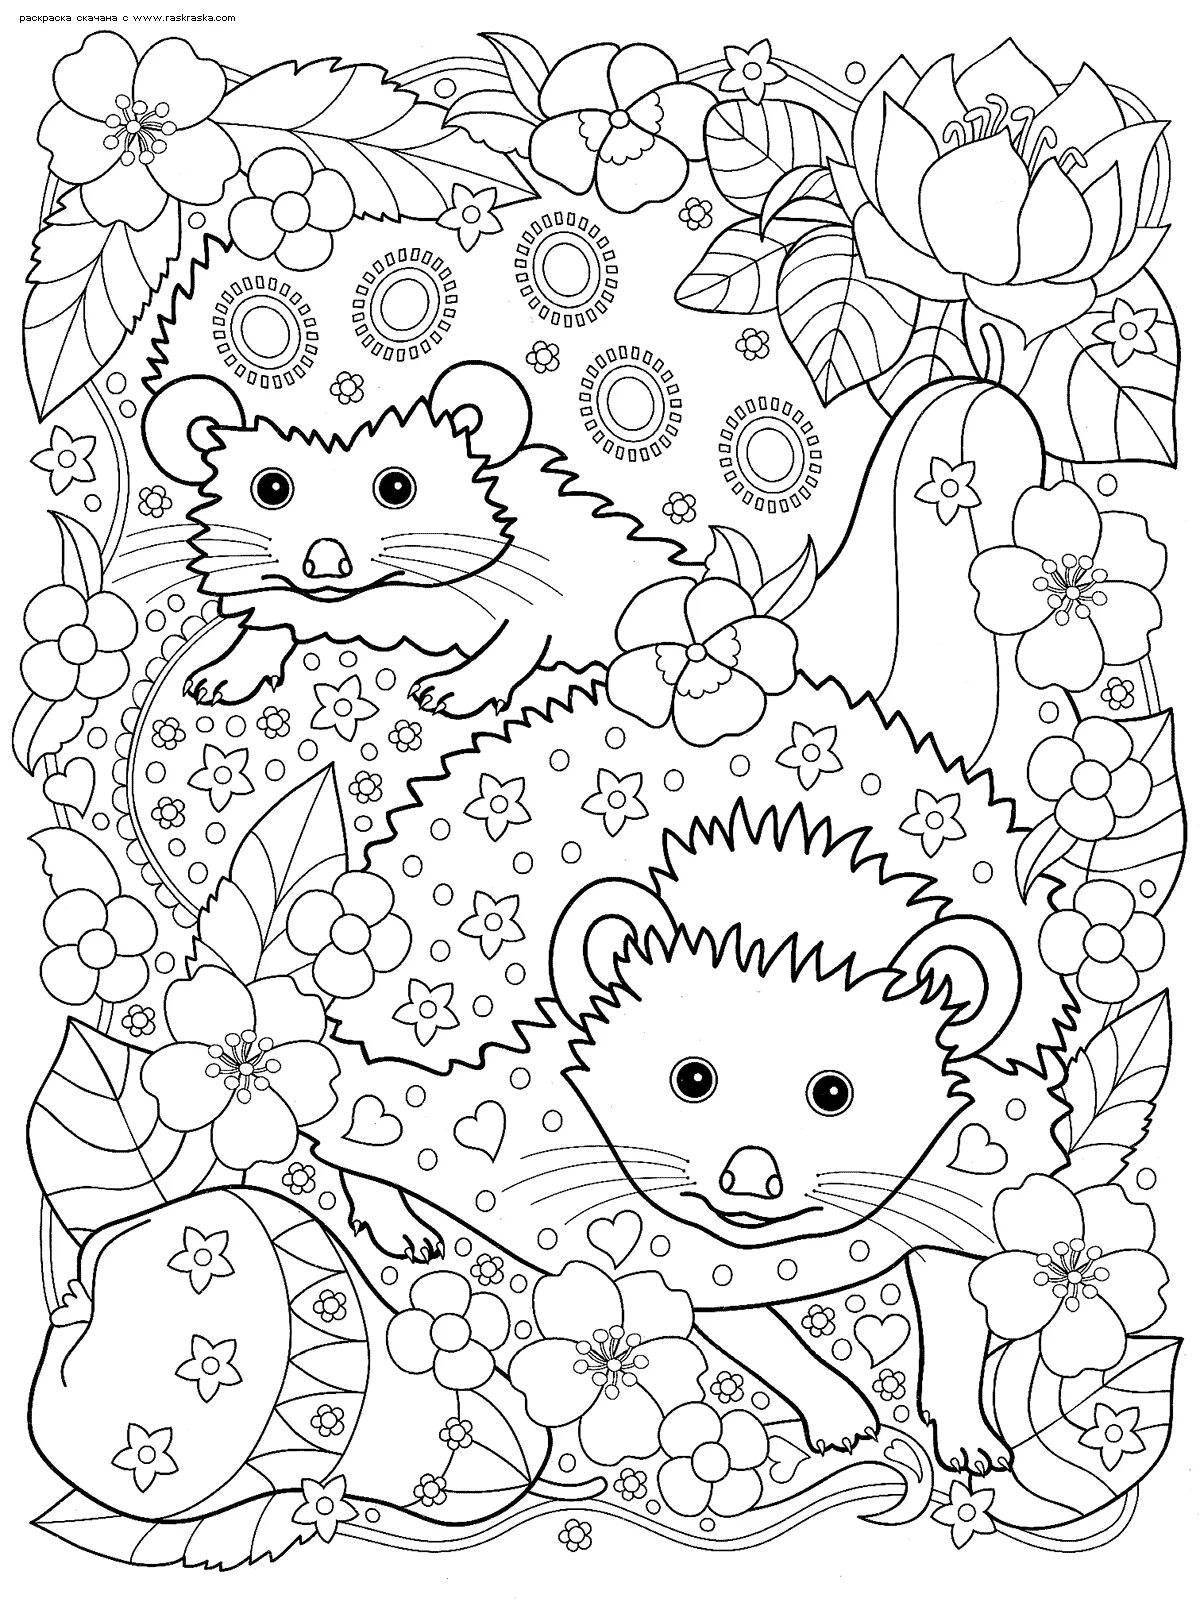 Coloring nice hedgehog by numbers